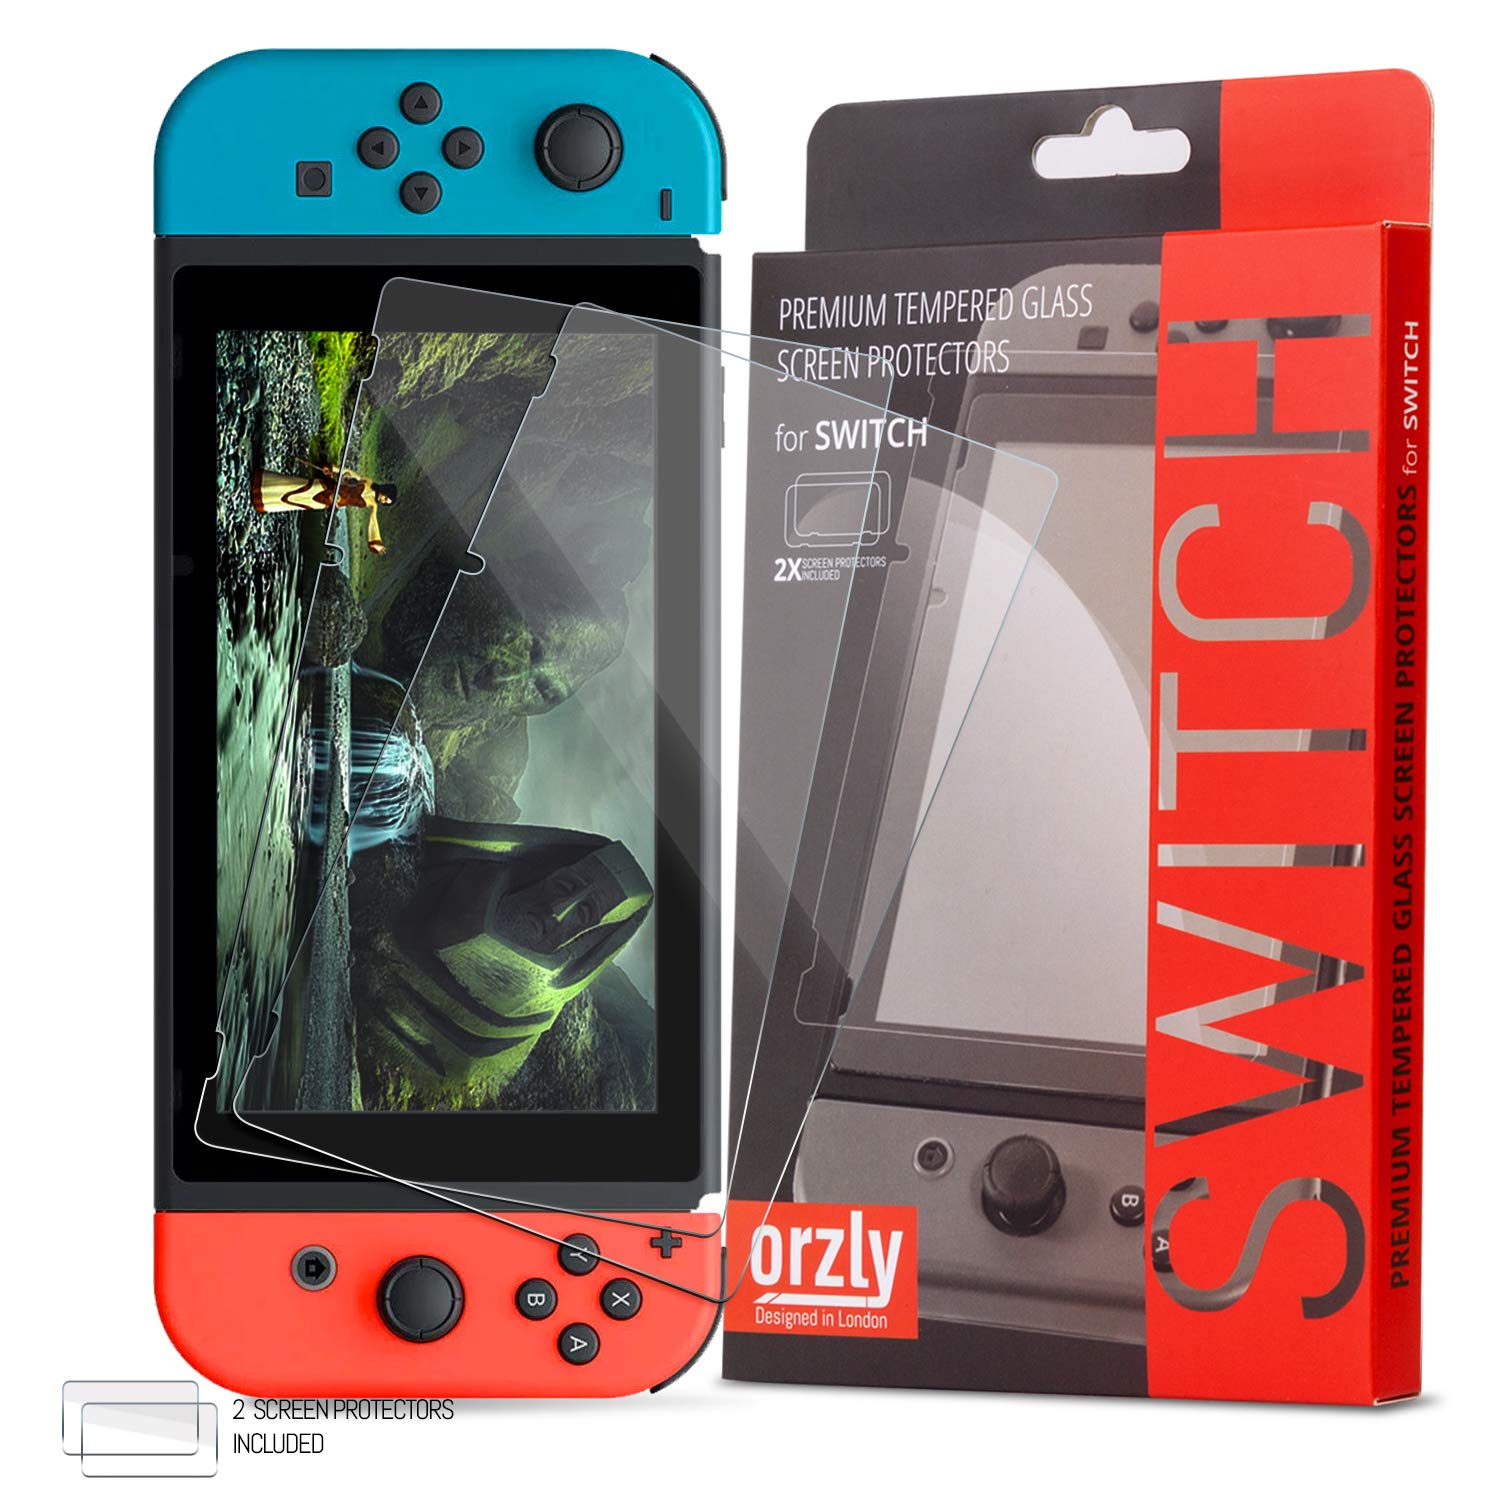 Haute Qualité Protection écran pour Nintendo Switch en Verre Trempé par Orzly - PACK DE 2 FILMS - Premium Ultra Résistant en Verre Trempé - Oléophobe 100% Transparent plE5TW4MH vente chaude